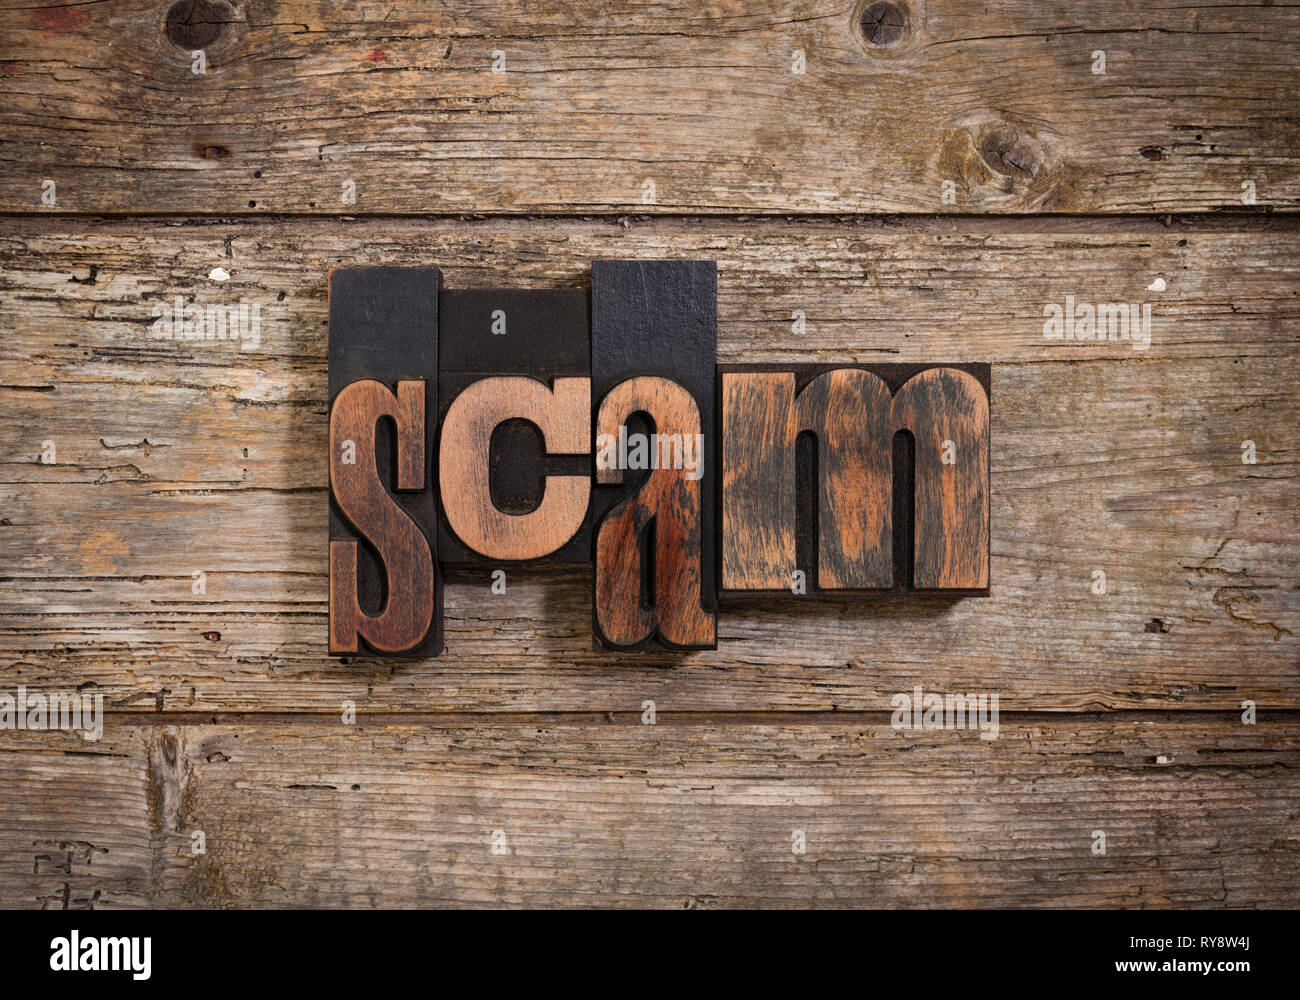 Scam, el único conjunto de word con tipografía vintage bloques sobre fondo de madera rústica Foto de stock